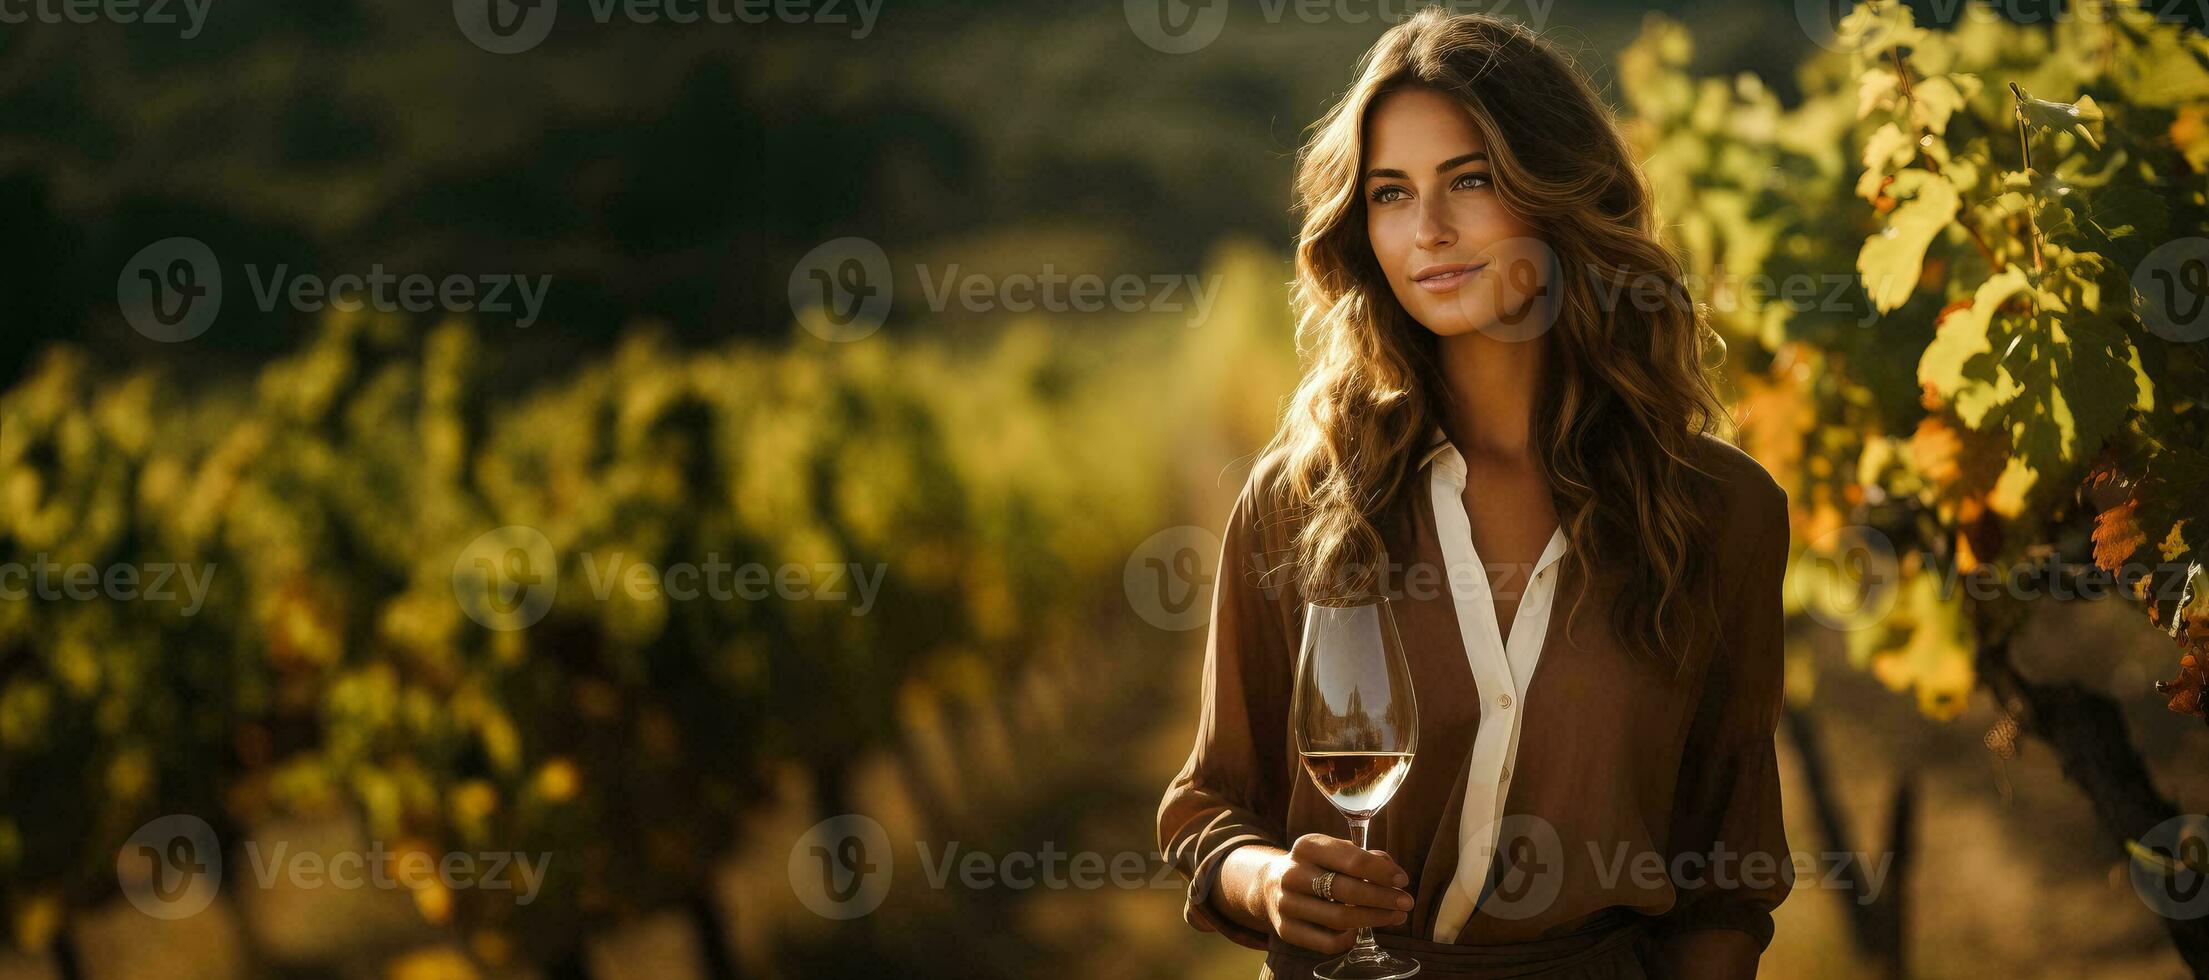 vrouw met wijn glas staand in wijngaard gedurende foto